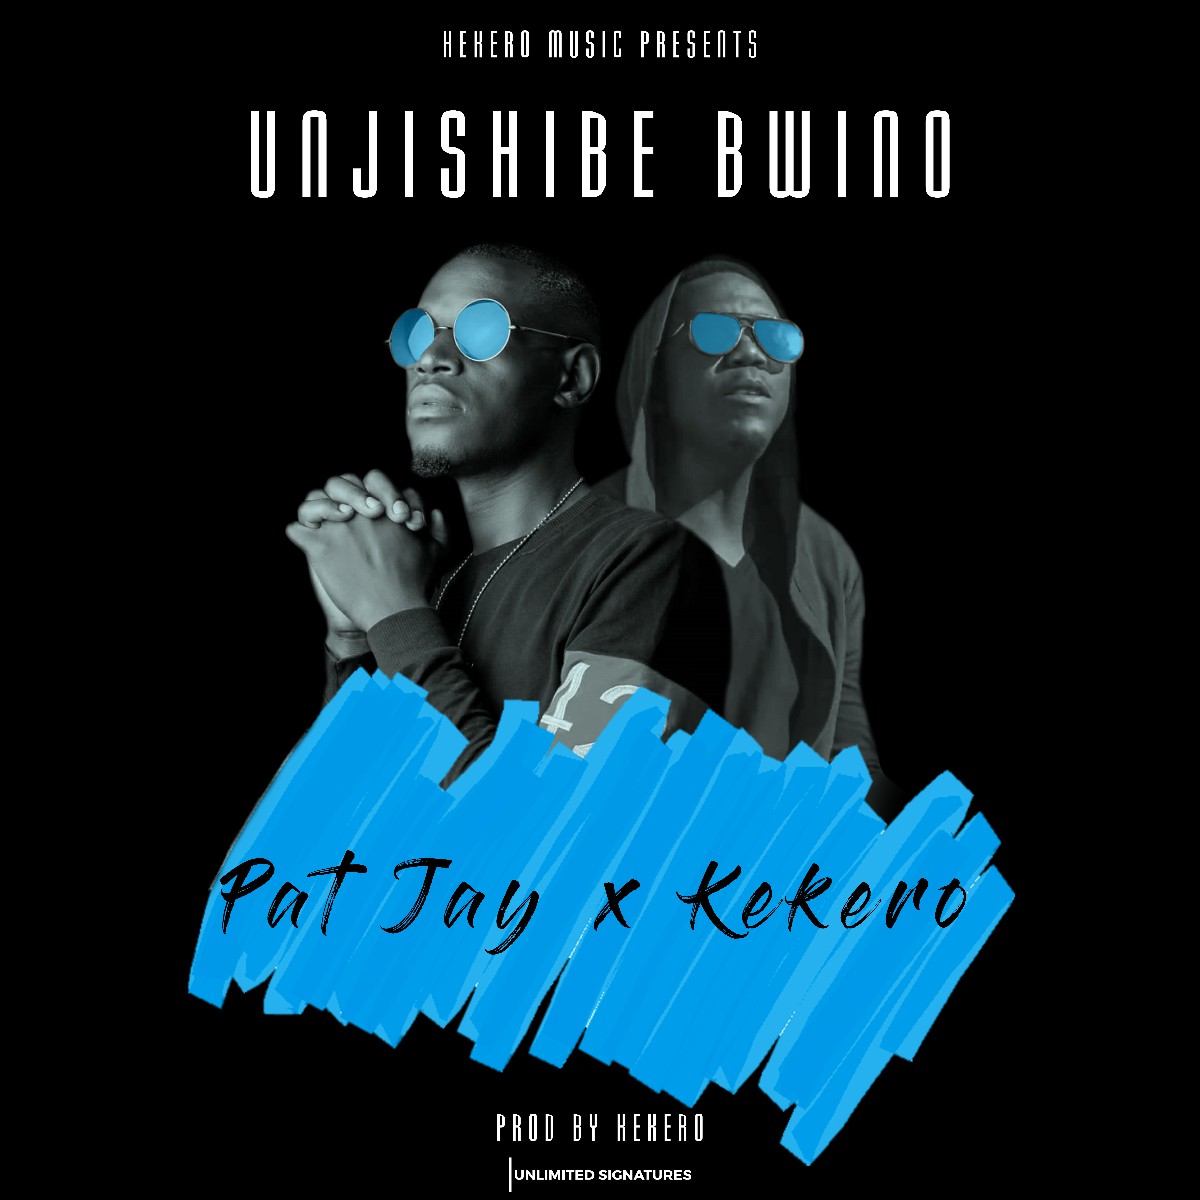 Pat Jay ft. Kekero - Unjishibe Bwino